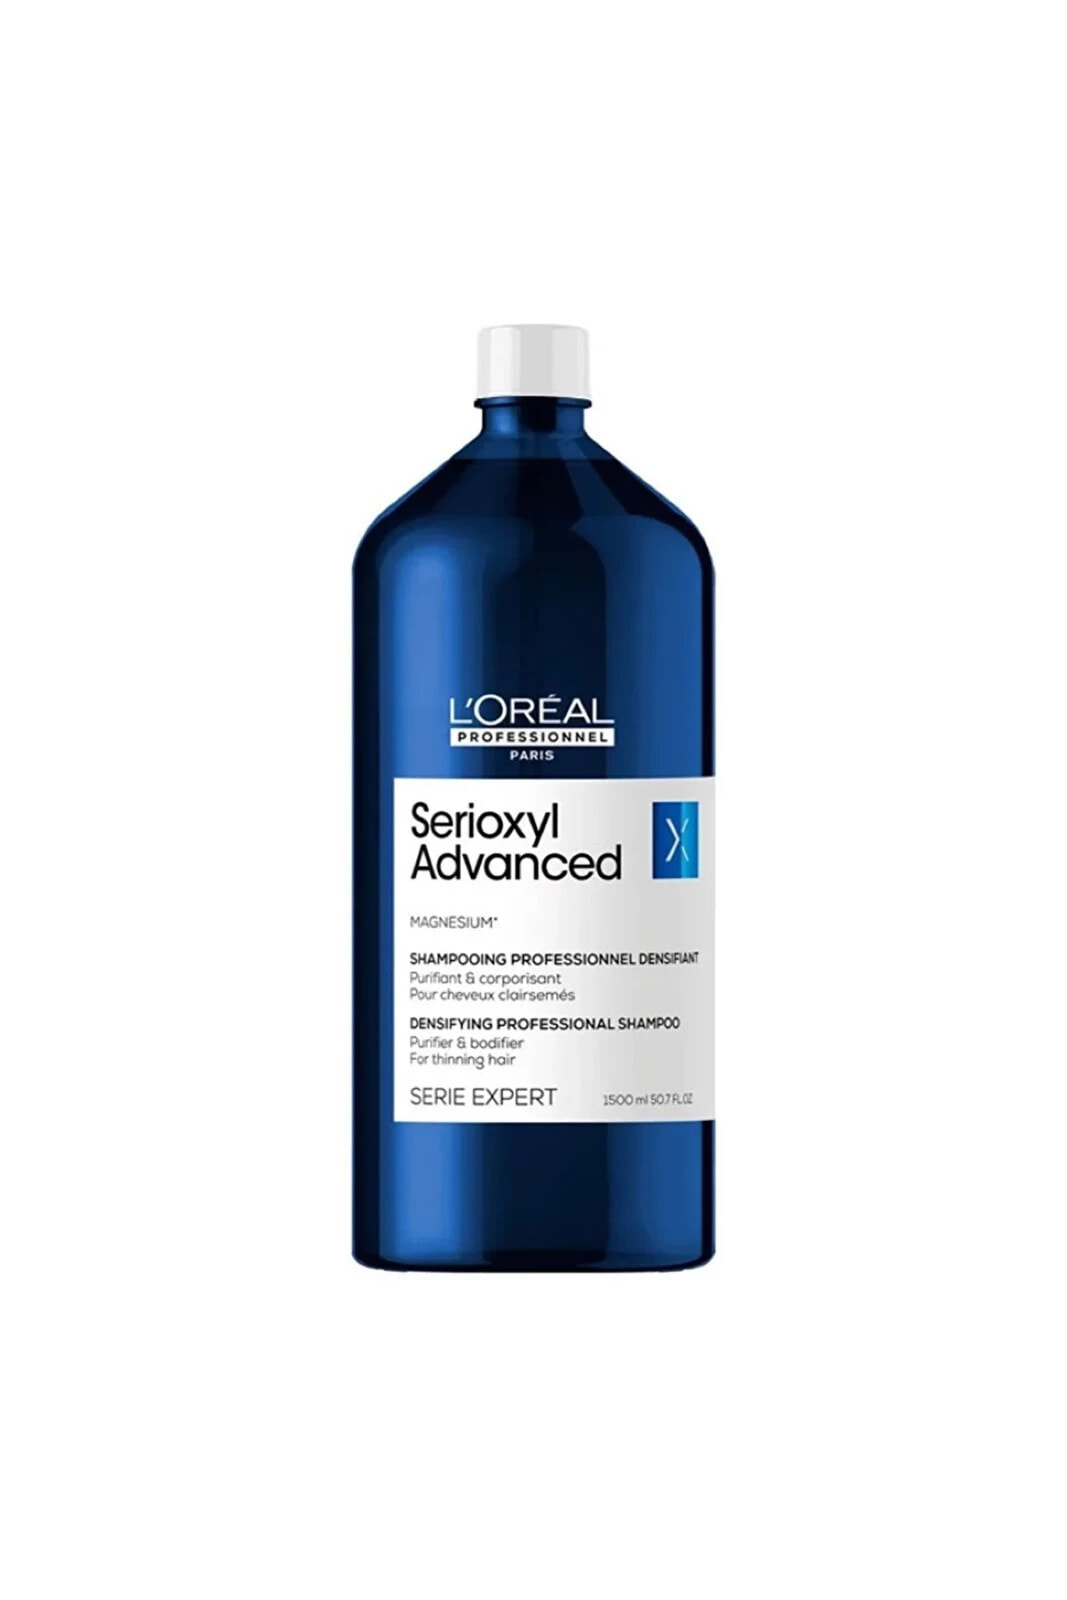 LOREAL Serioxyl Advanced Densifying İncelen Saçlar İçin Hacimli-Dolgunlaştırıcı Şampuan 1500mlSED646